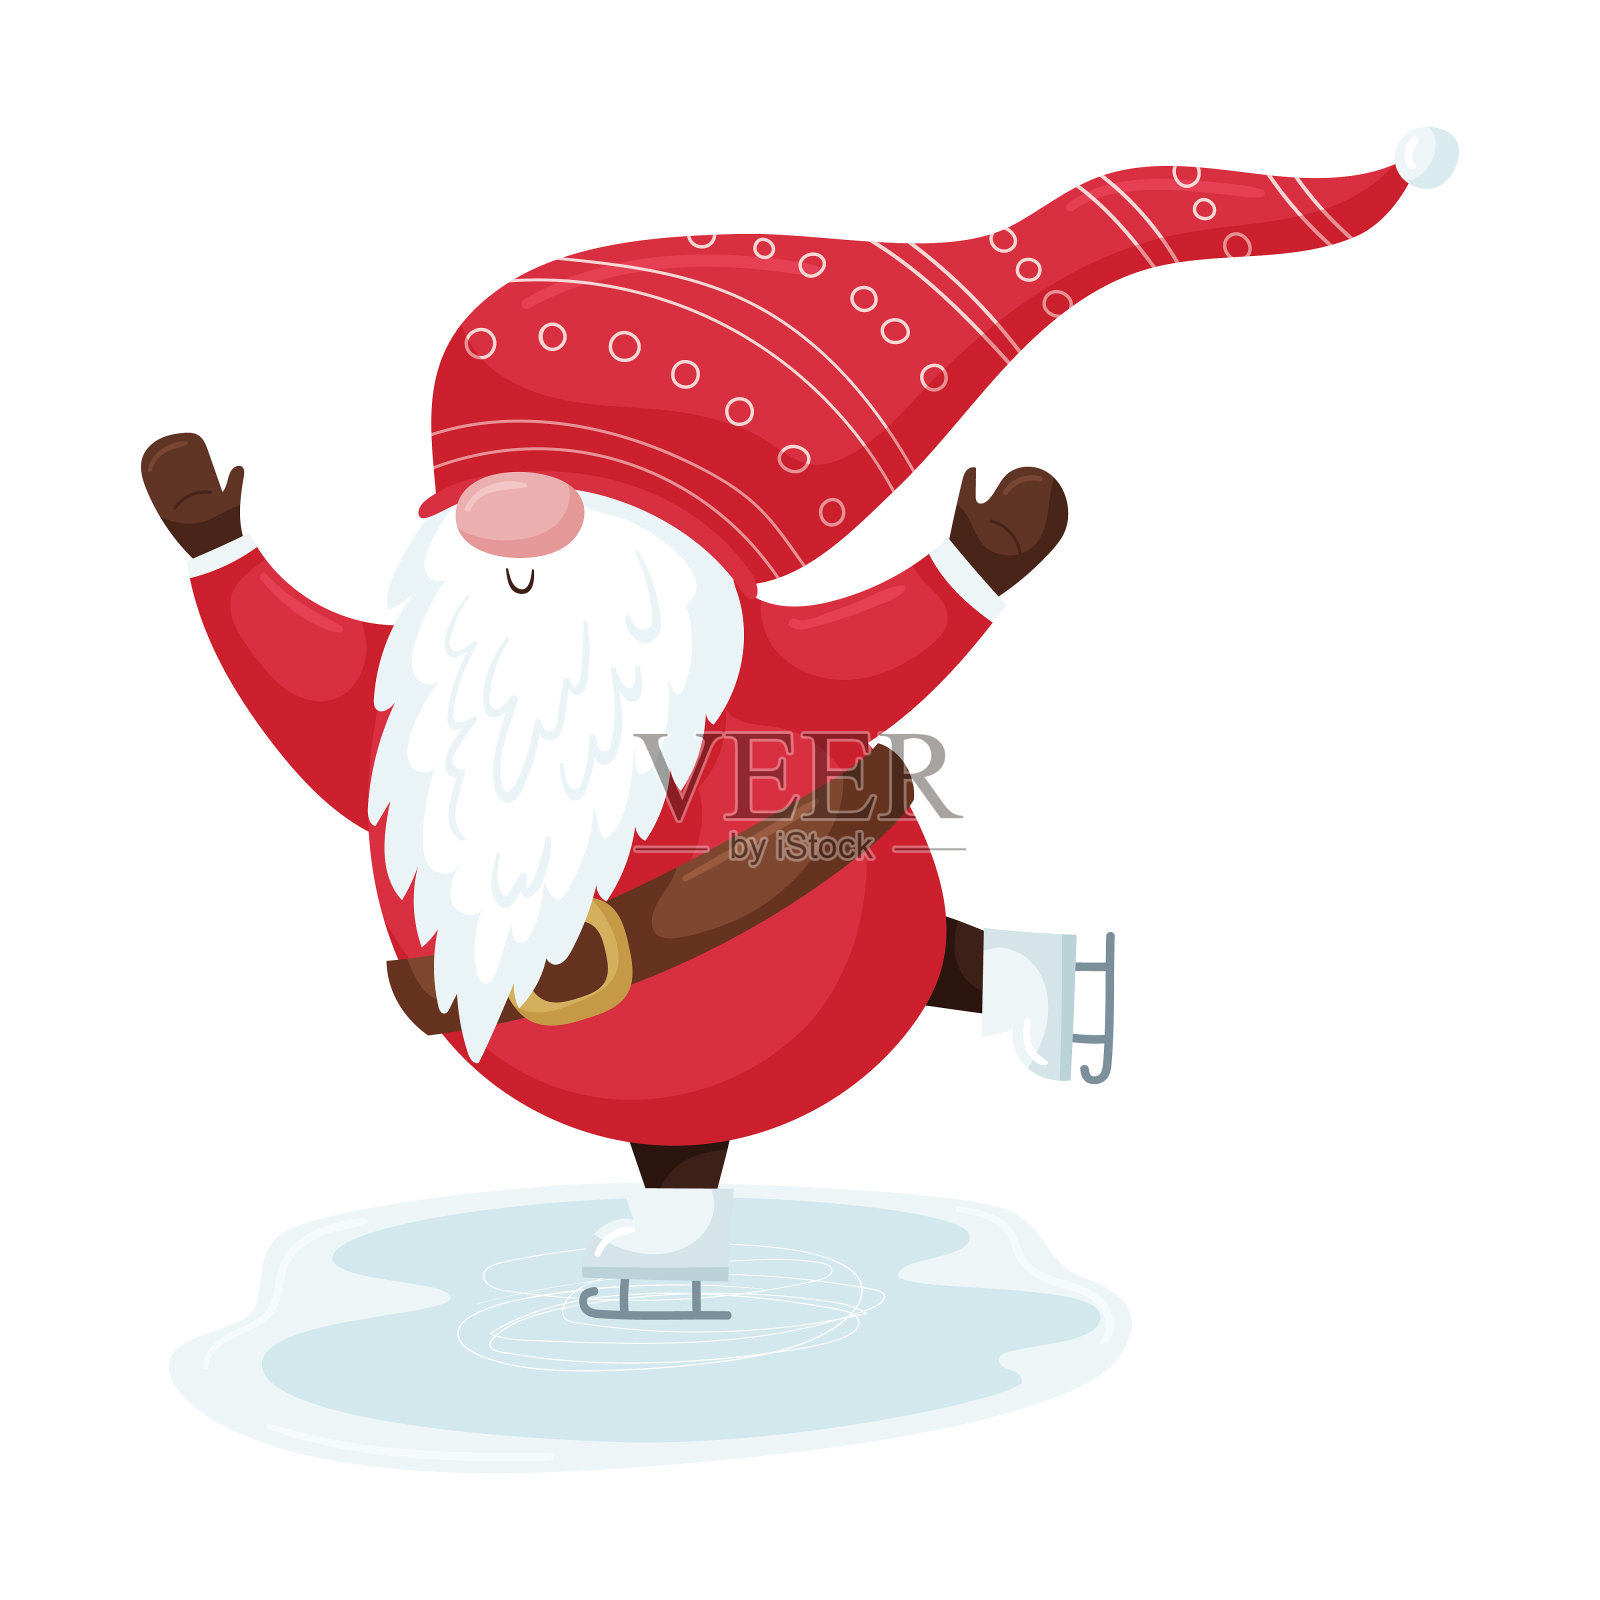 一个戴着红帽子、长着胡子的圣诞小精灵正在溜冰场上滑冰。新年可爱的卡通人物孤立在一个白色的背景。插画图片素材